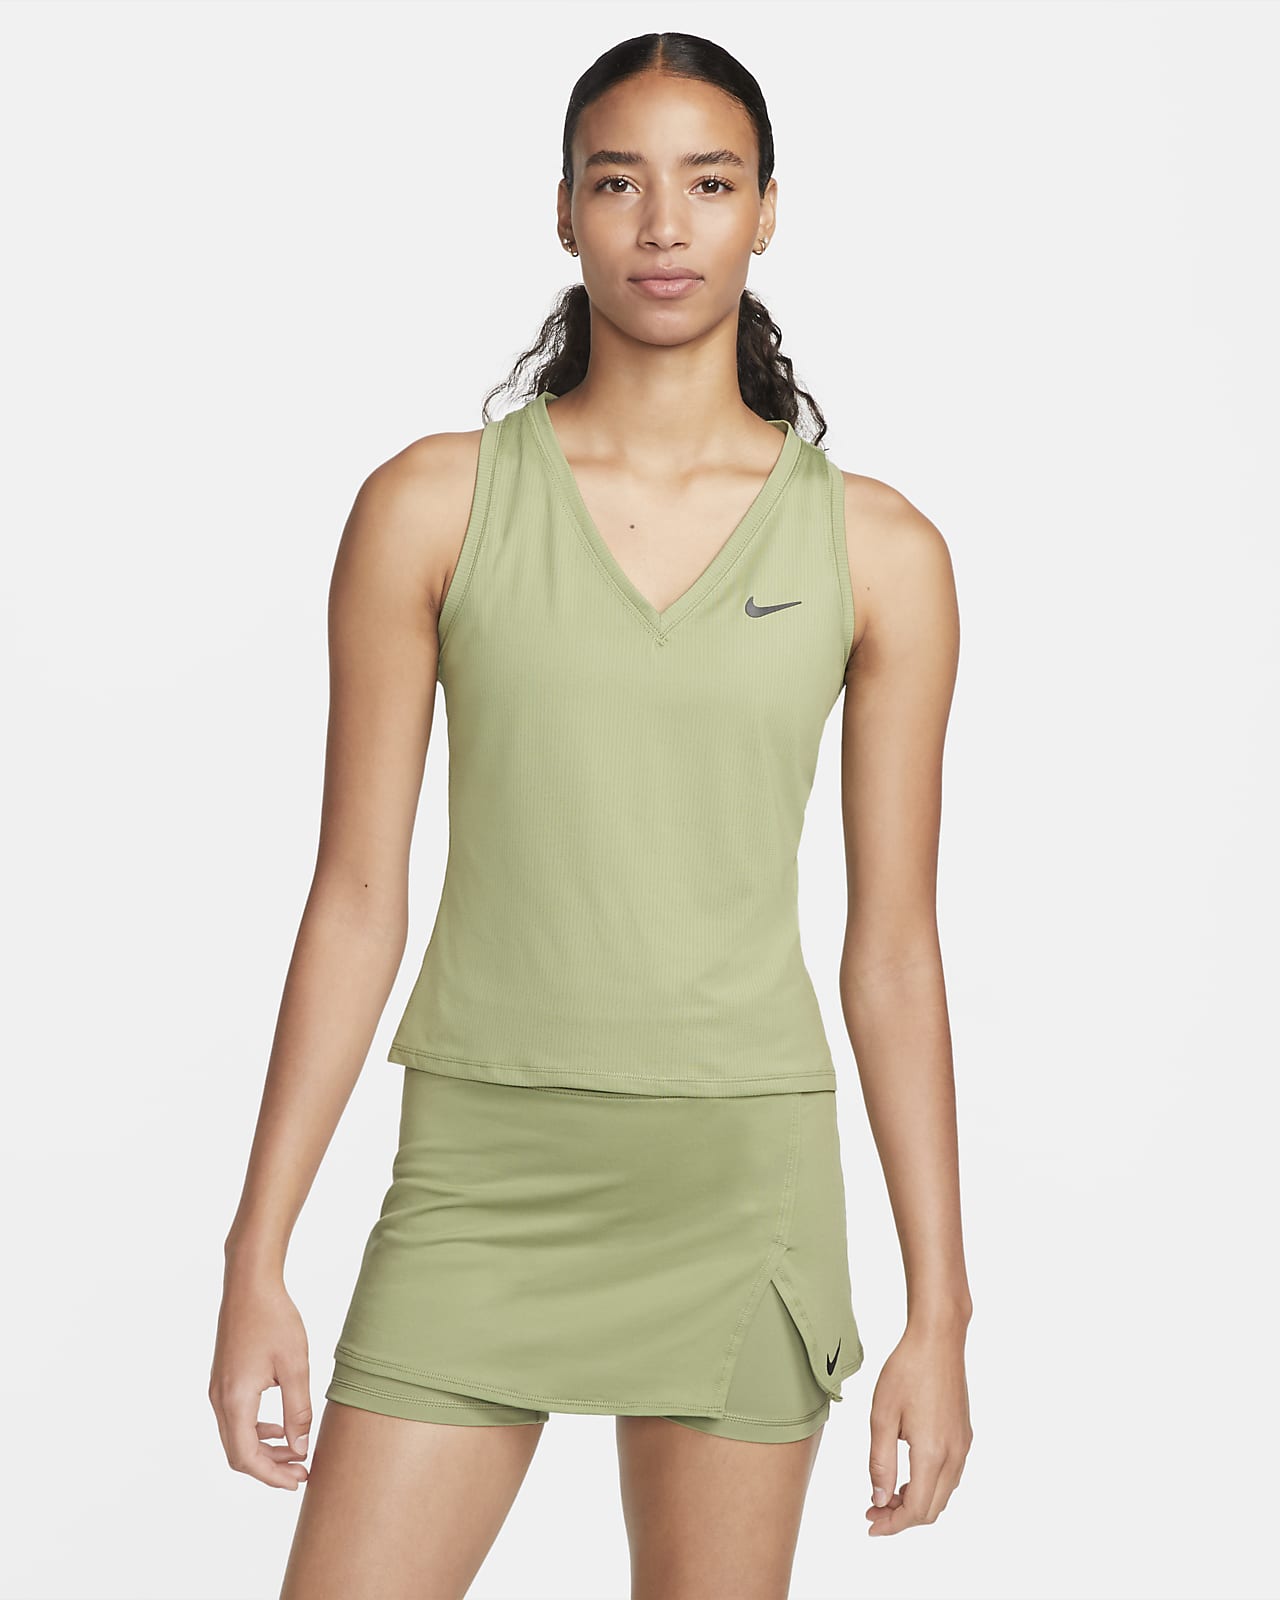 Repeler borracho Vulgaridad NikeCourt Victory Camiseta de tirantes de tenis - Mujer. Nike ES